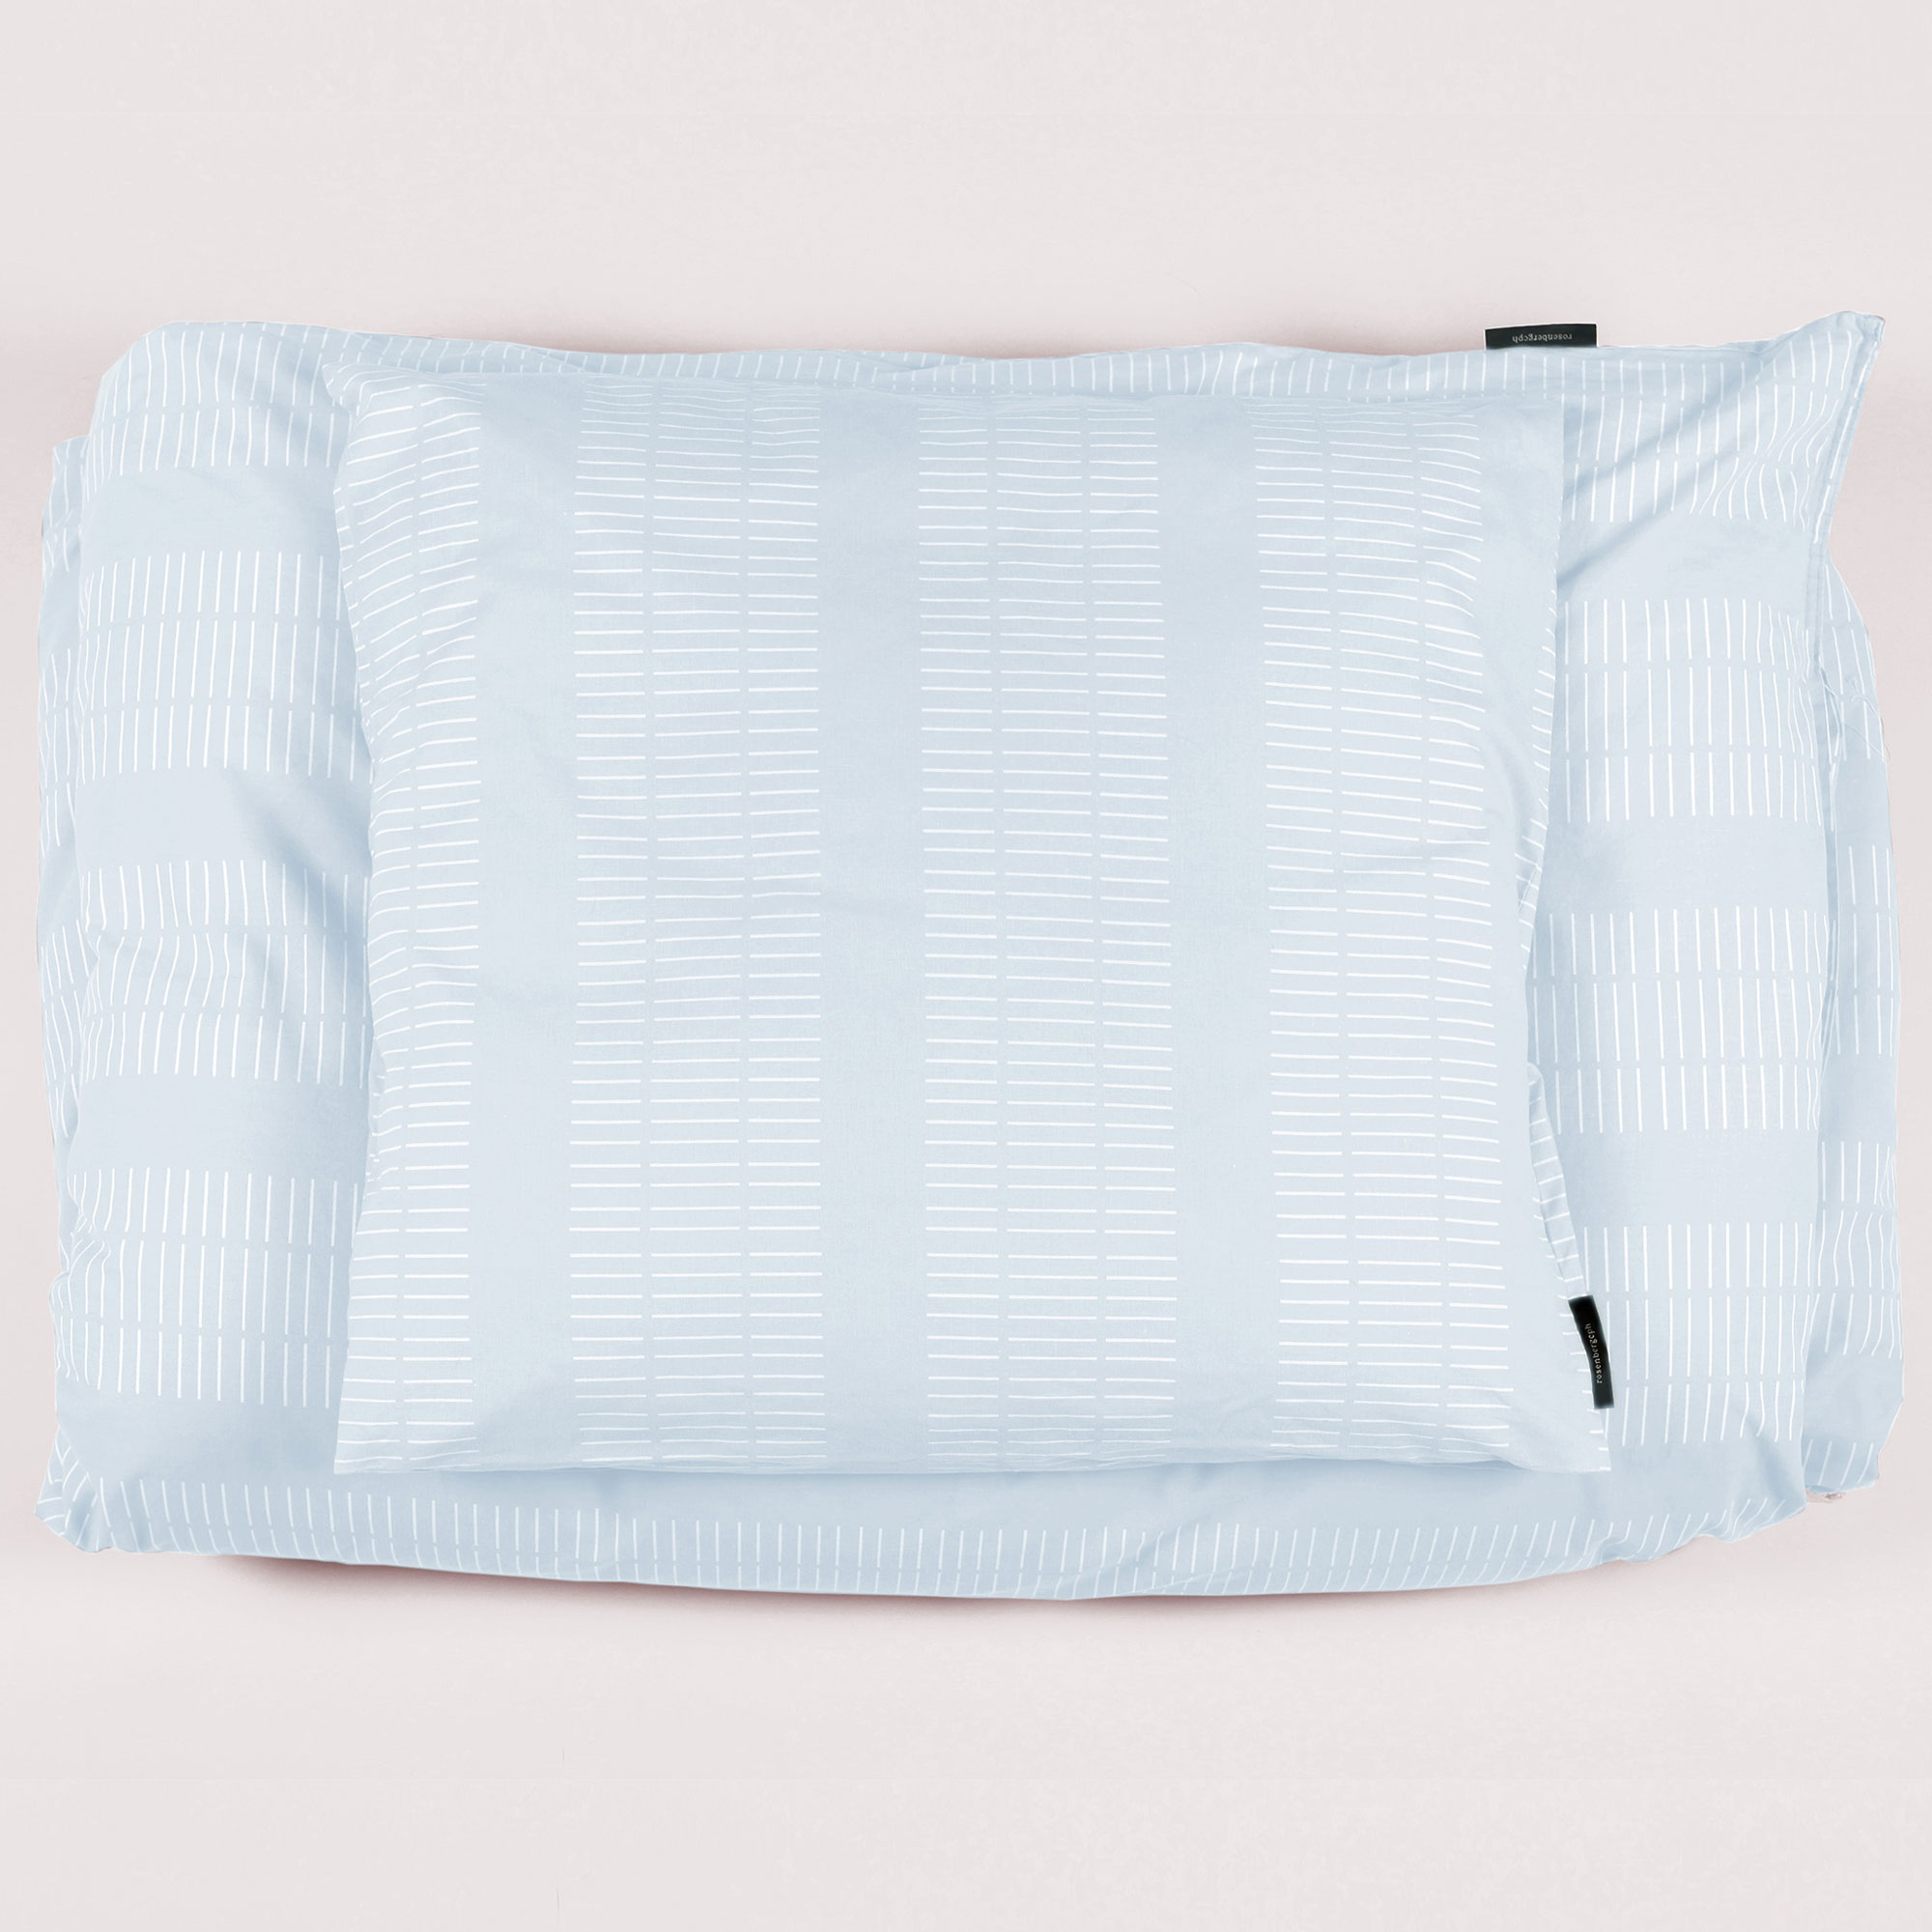 Bed linen, Dash sky blue, design Anne Rosenberg, RosenbergCph